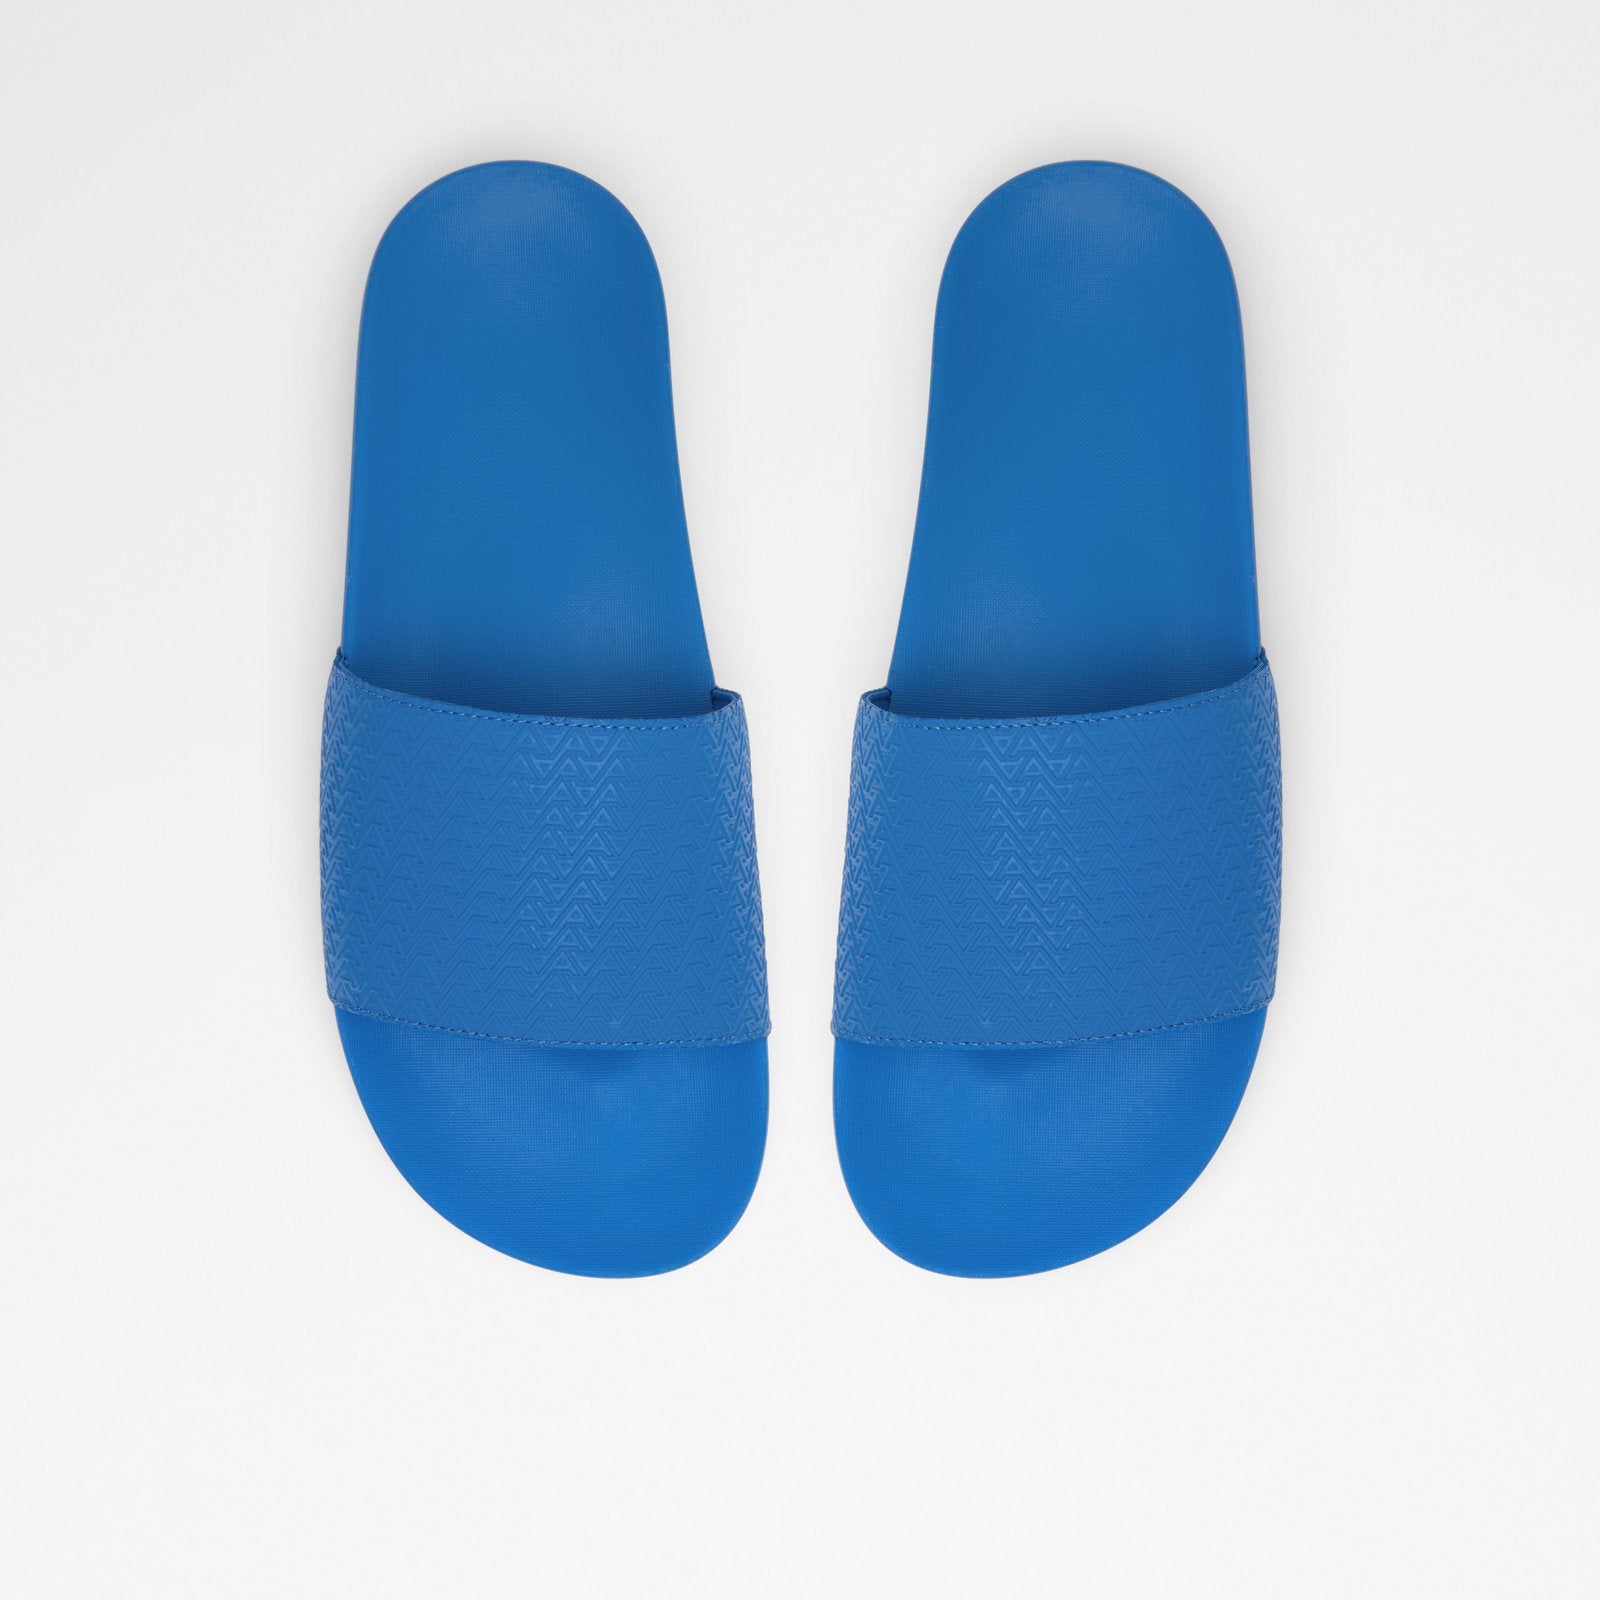 Mazaro Men Shoes - Blue - ALDO KSA